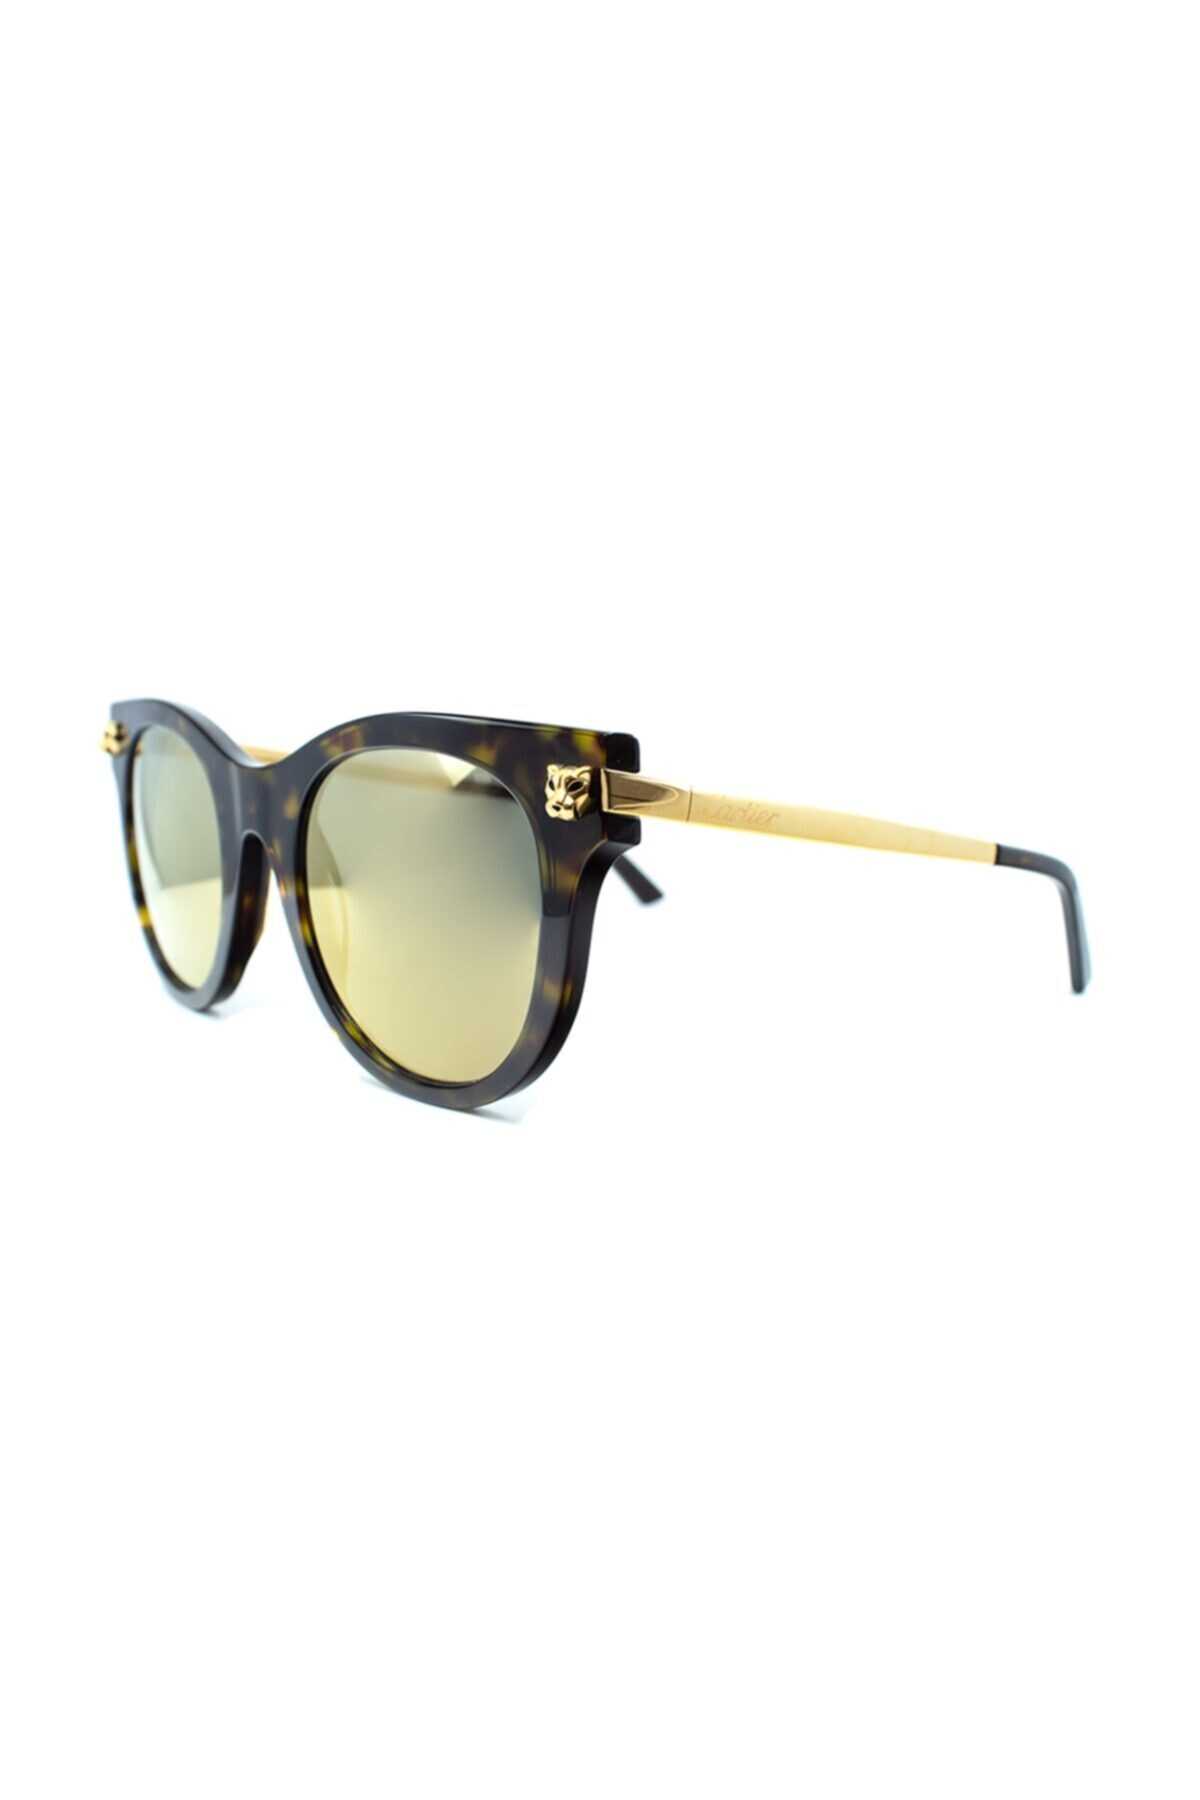 عینک آفتابی یونیسکس مدل Ct0024s 002 50 قهوه ای طلایی برند Cartier